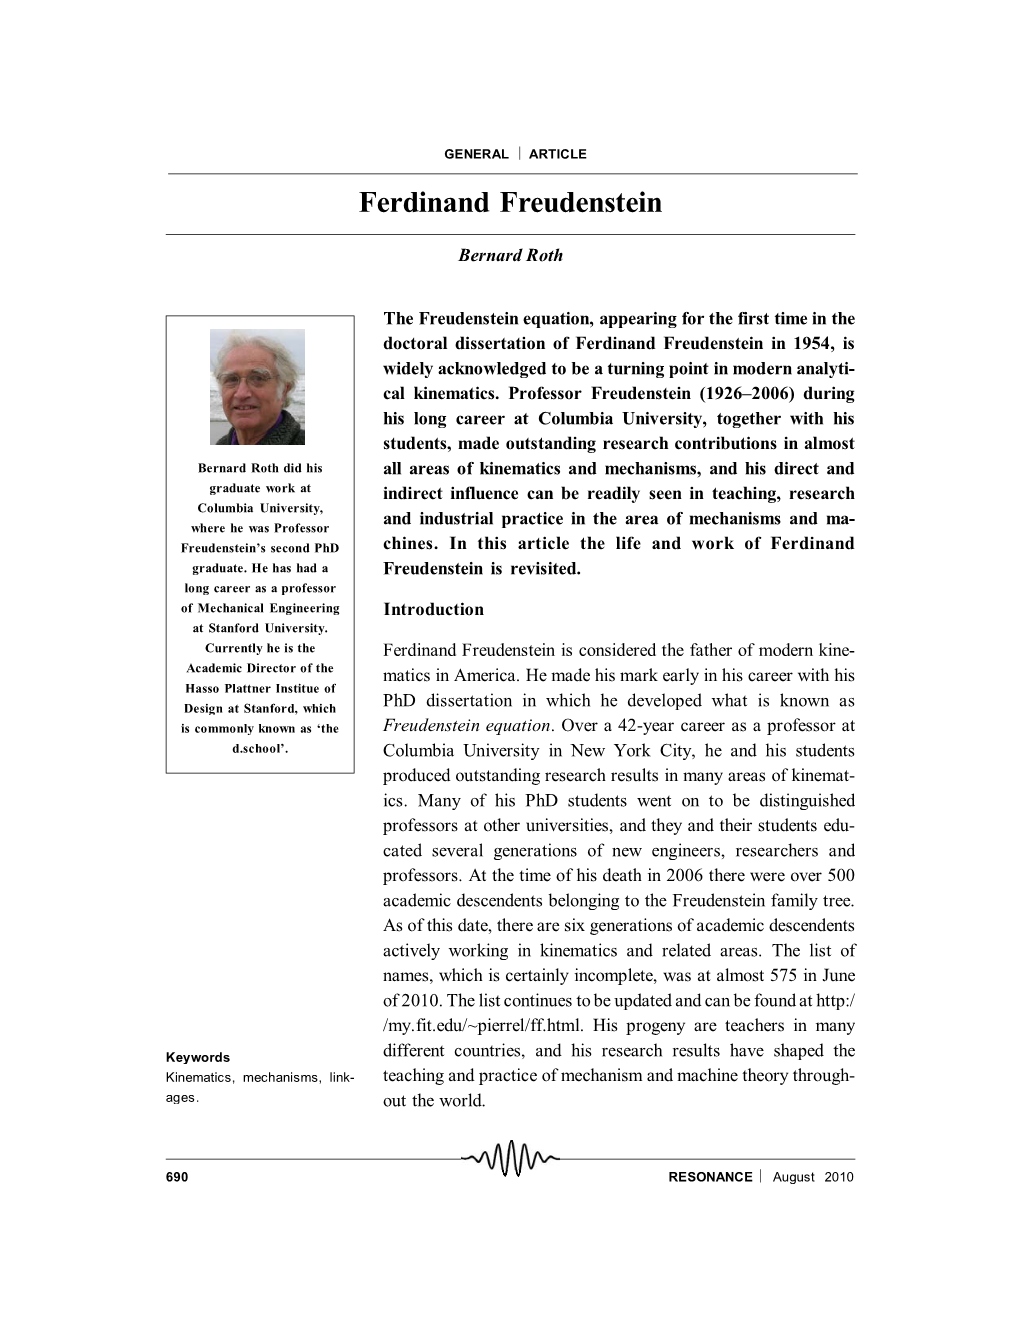 Ferdinand Freudenstein